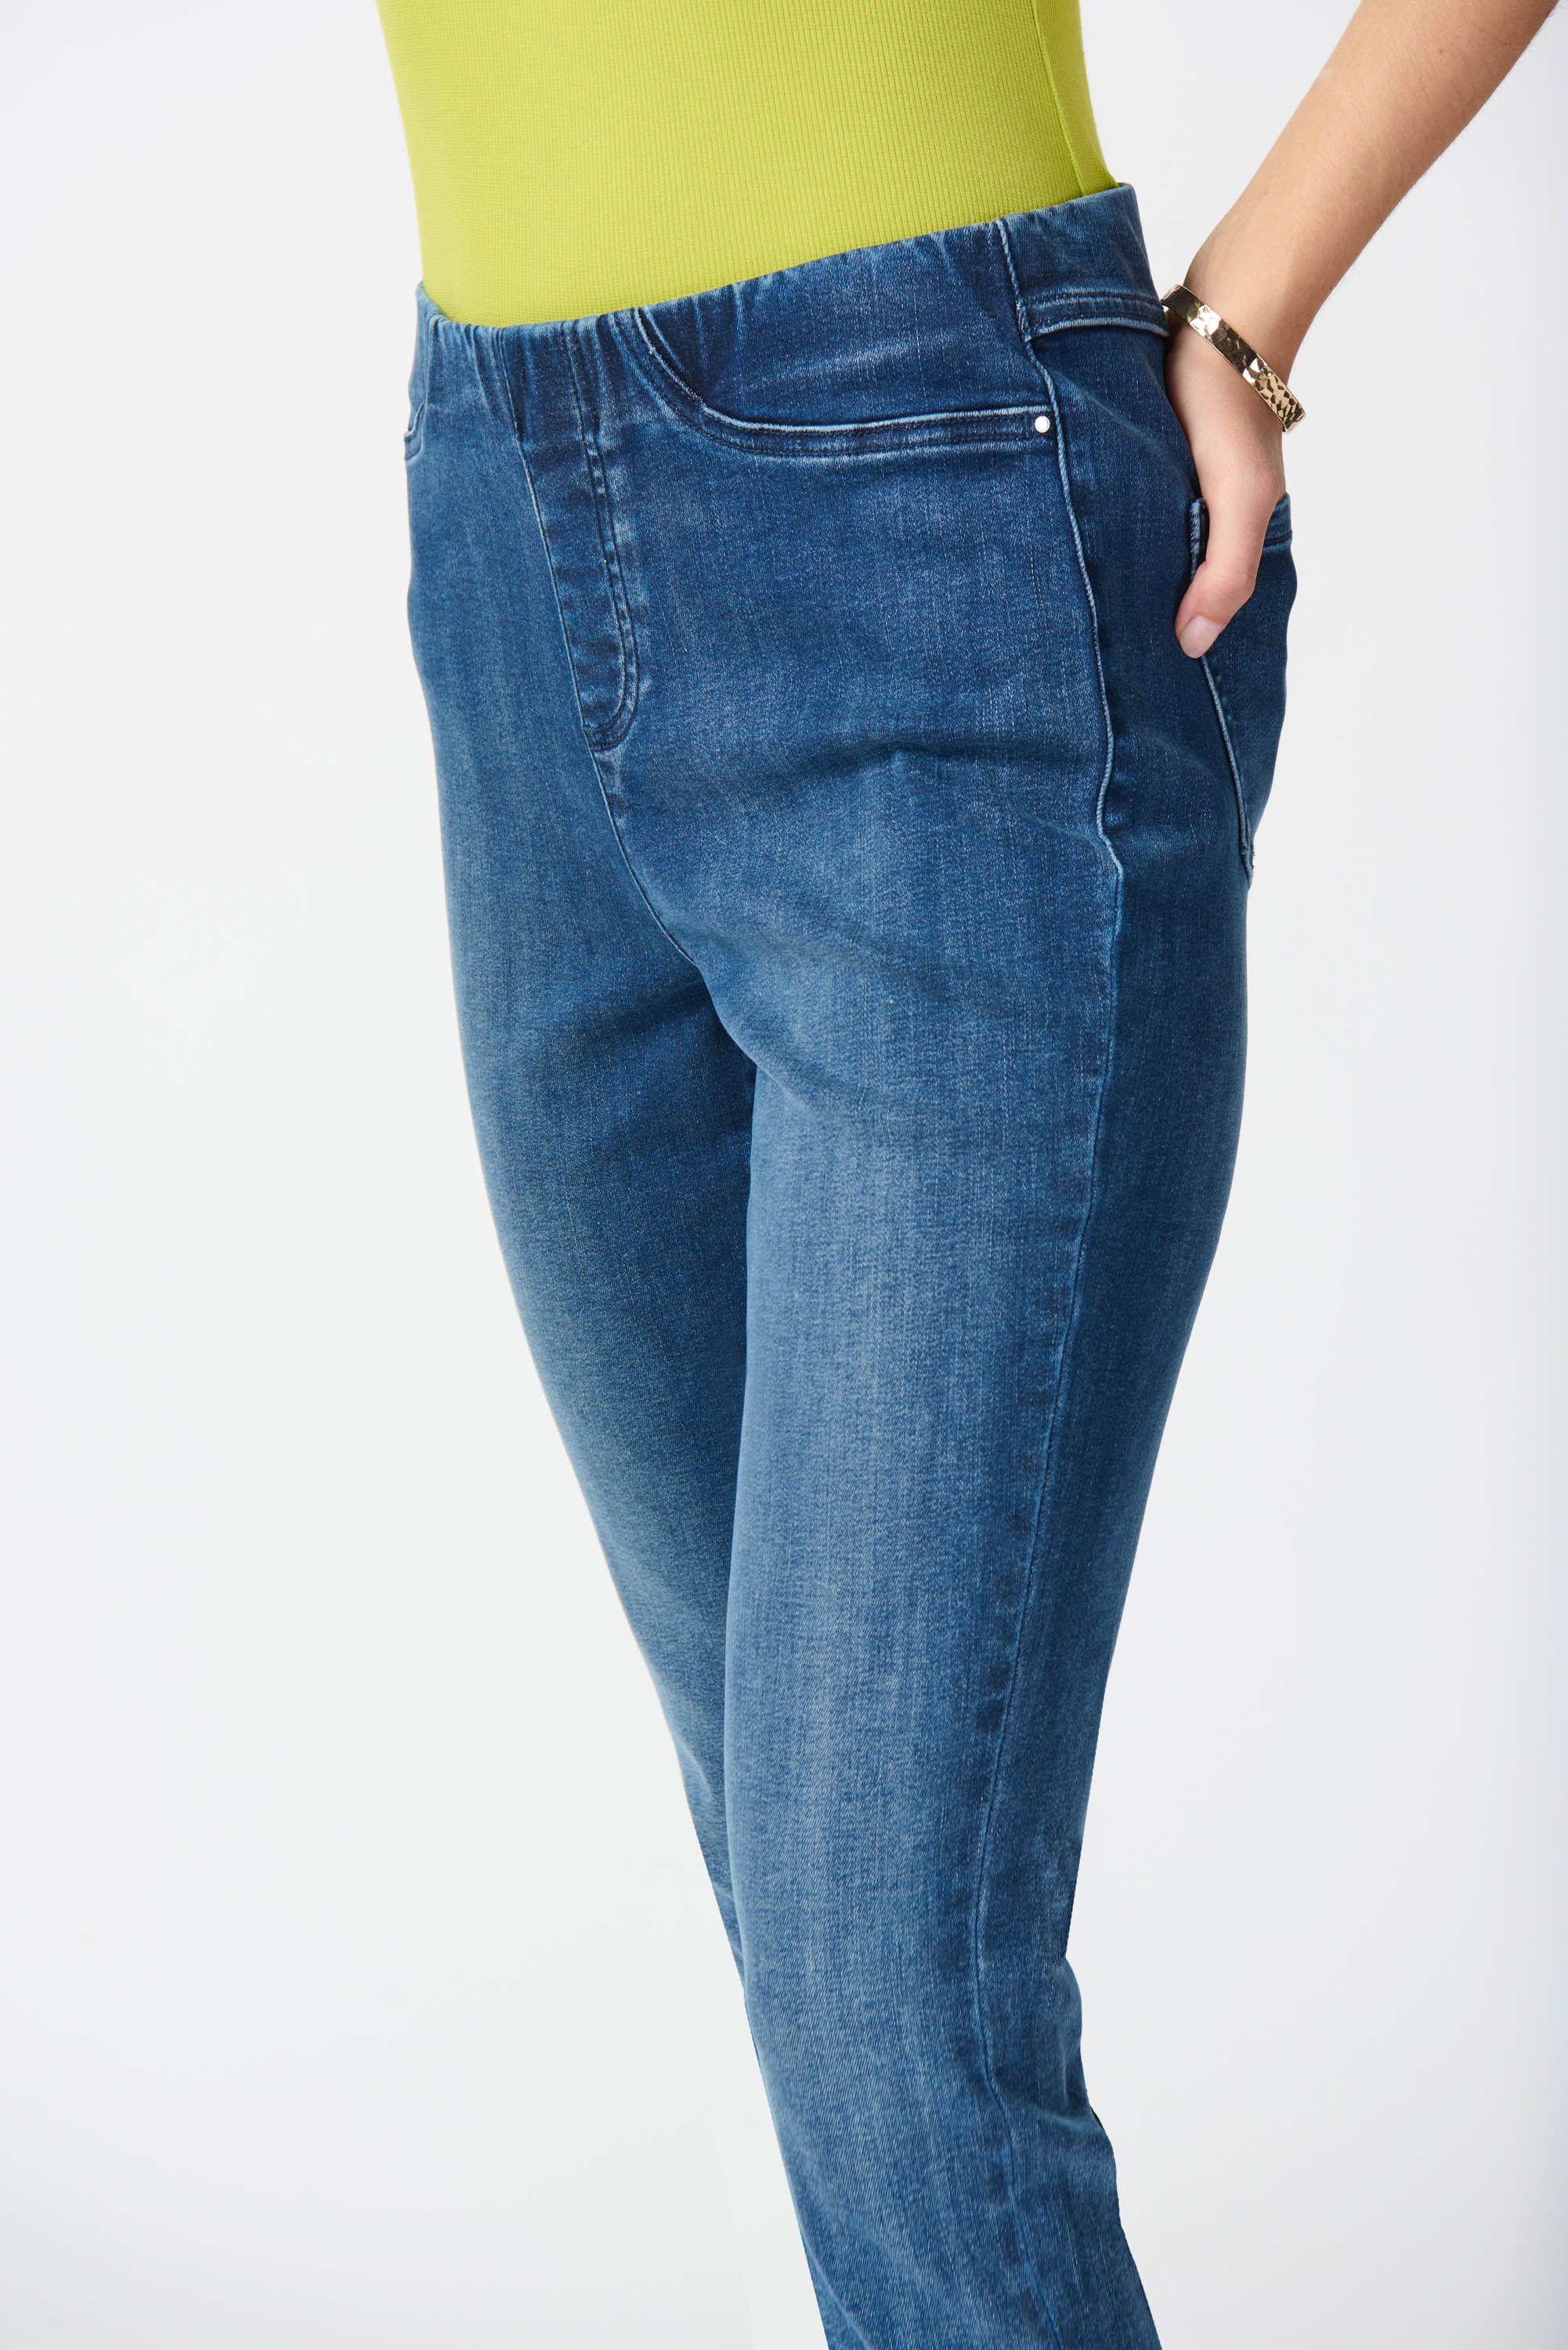 Joseph Ribkoff Slim Fit Pull-On Jeans Denim - 242924